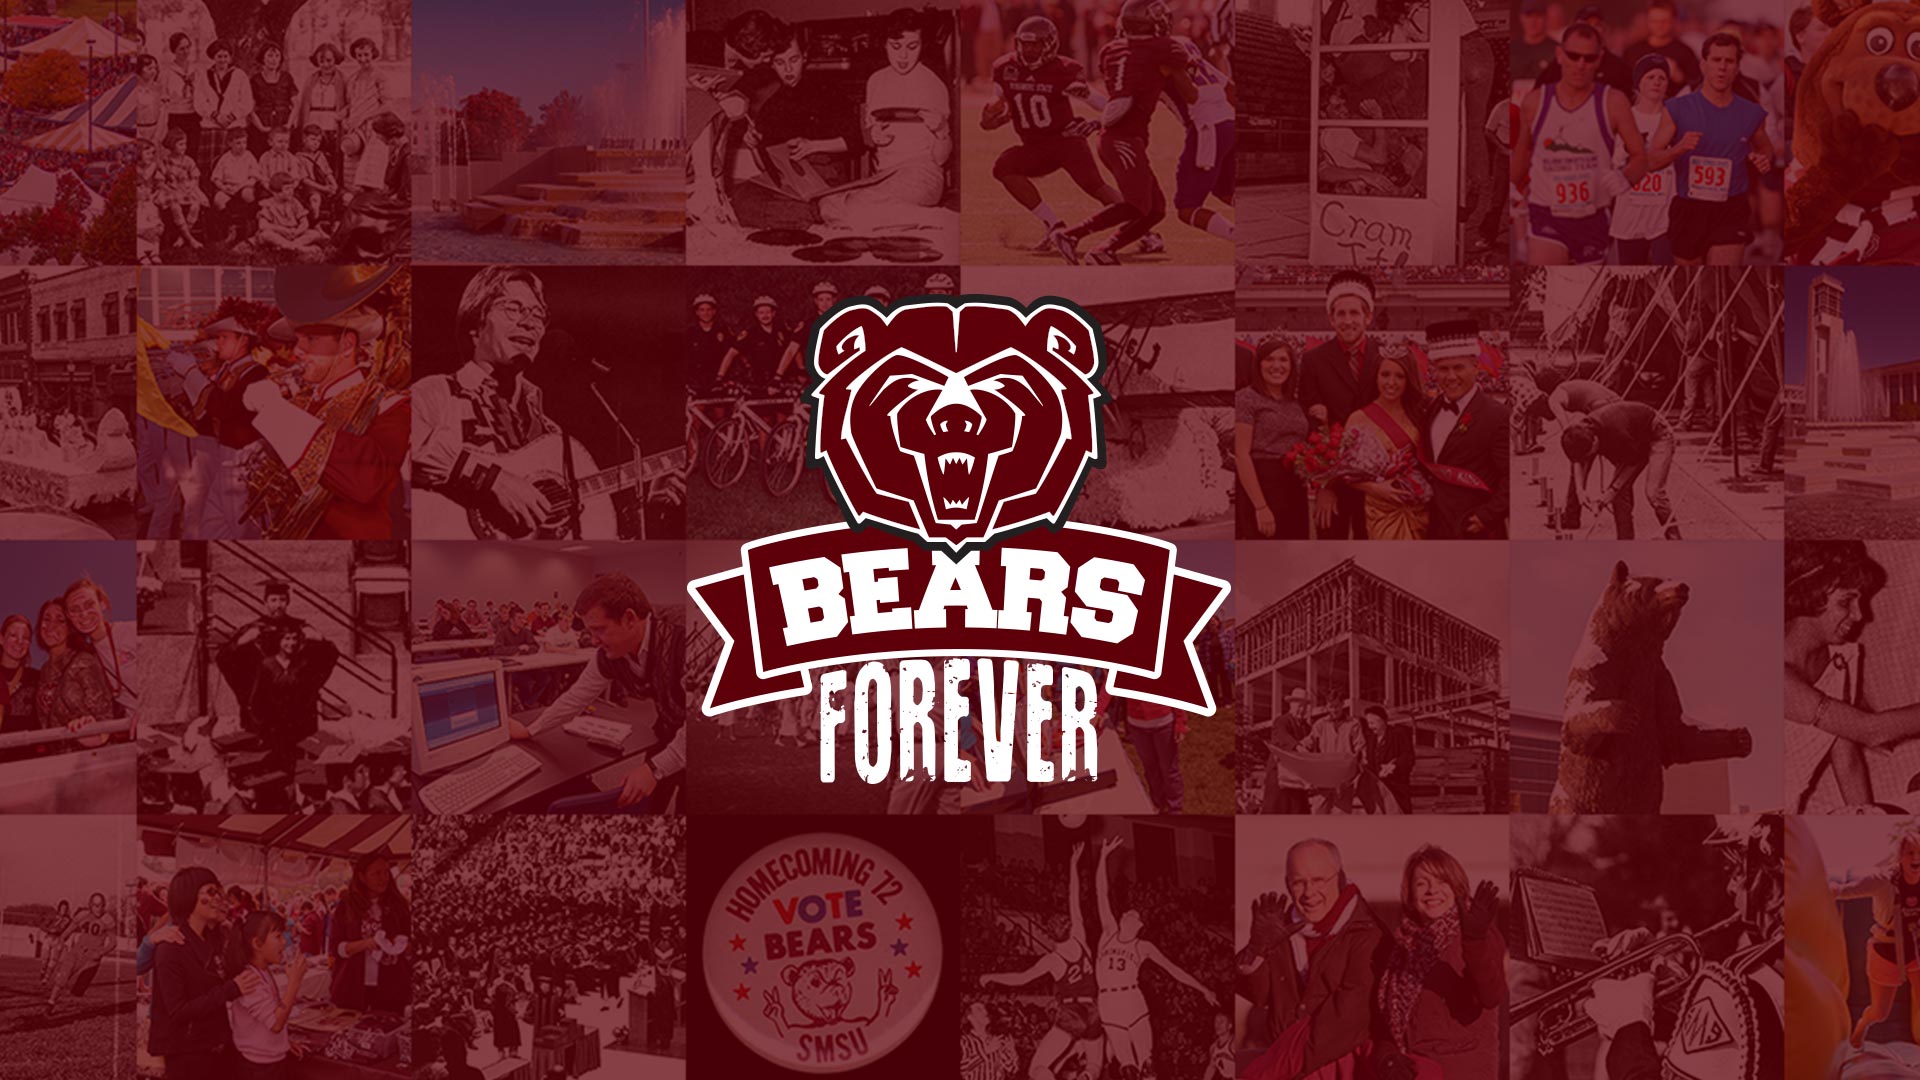 Bears forever